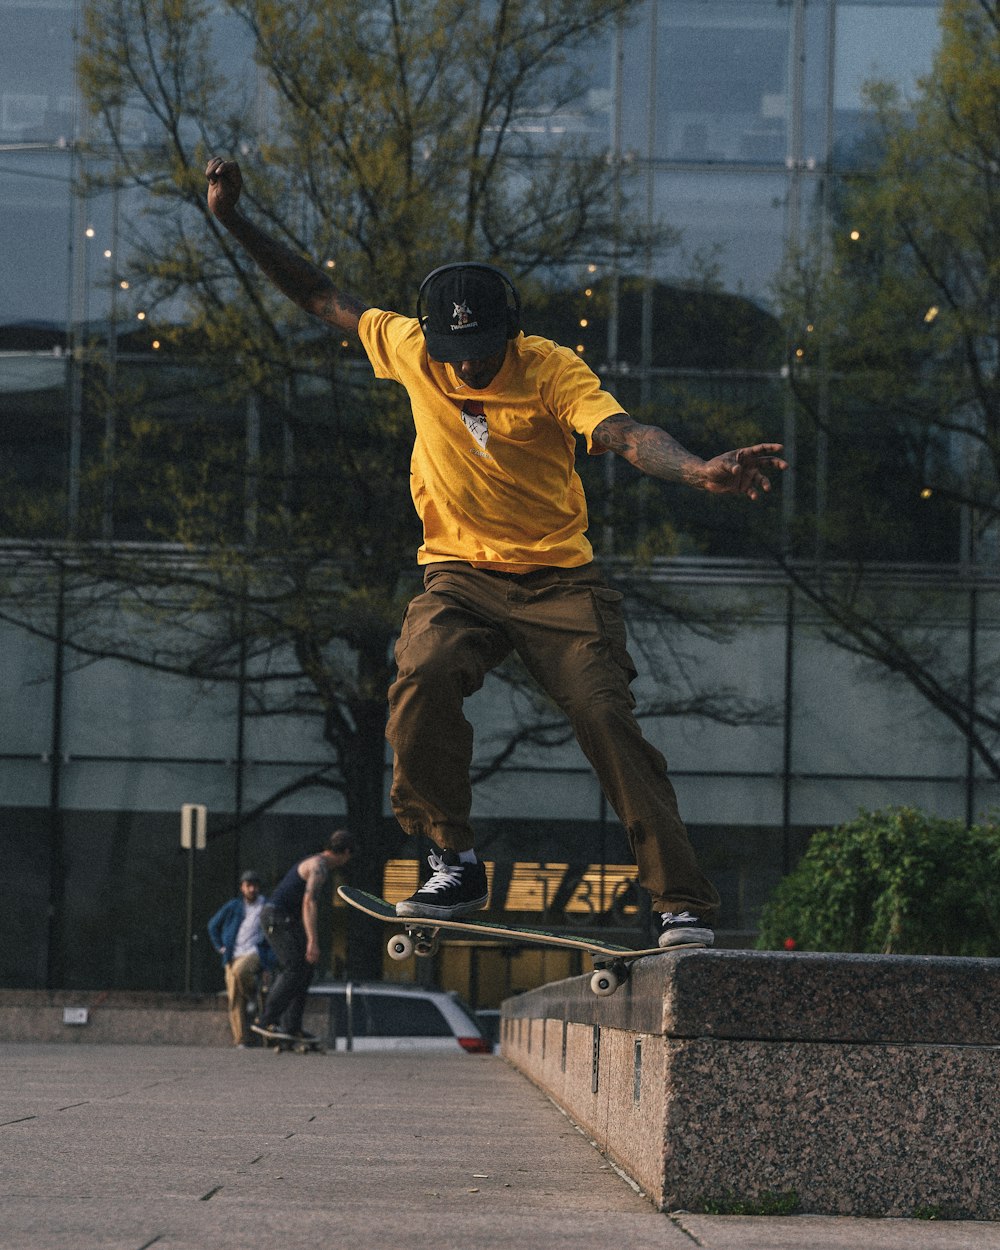 Mann in gelbem Hemd und brauner Hose spielt Skateboard